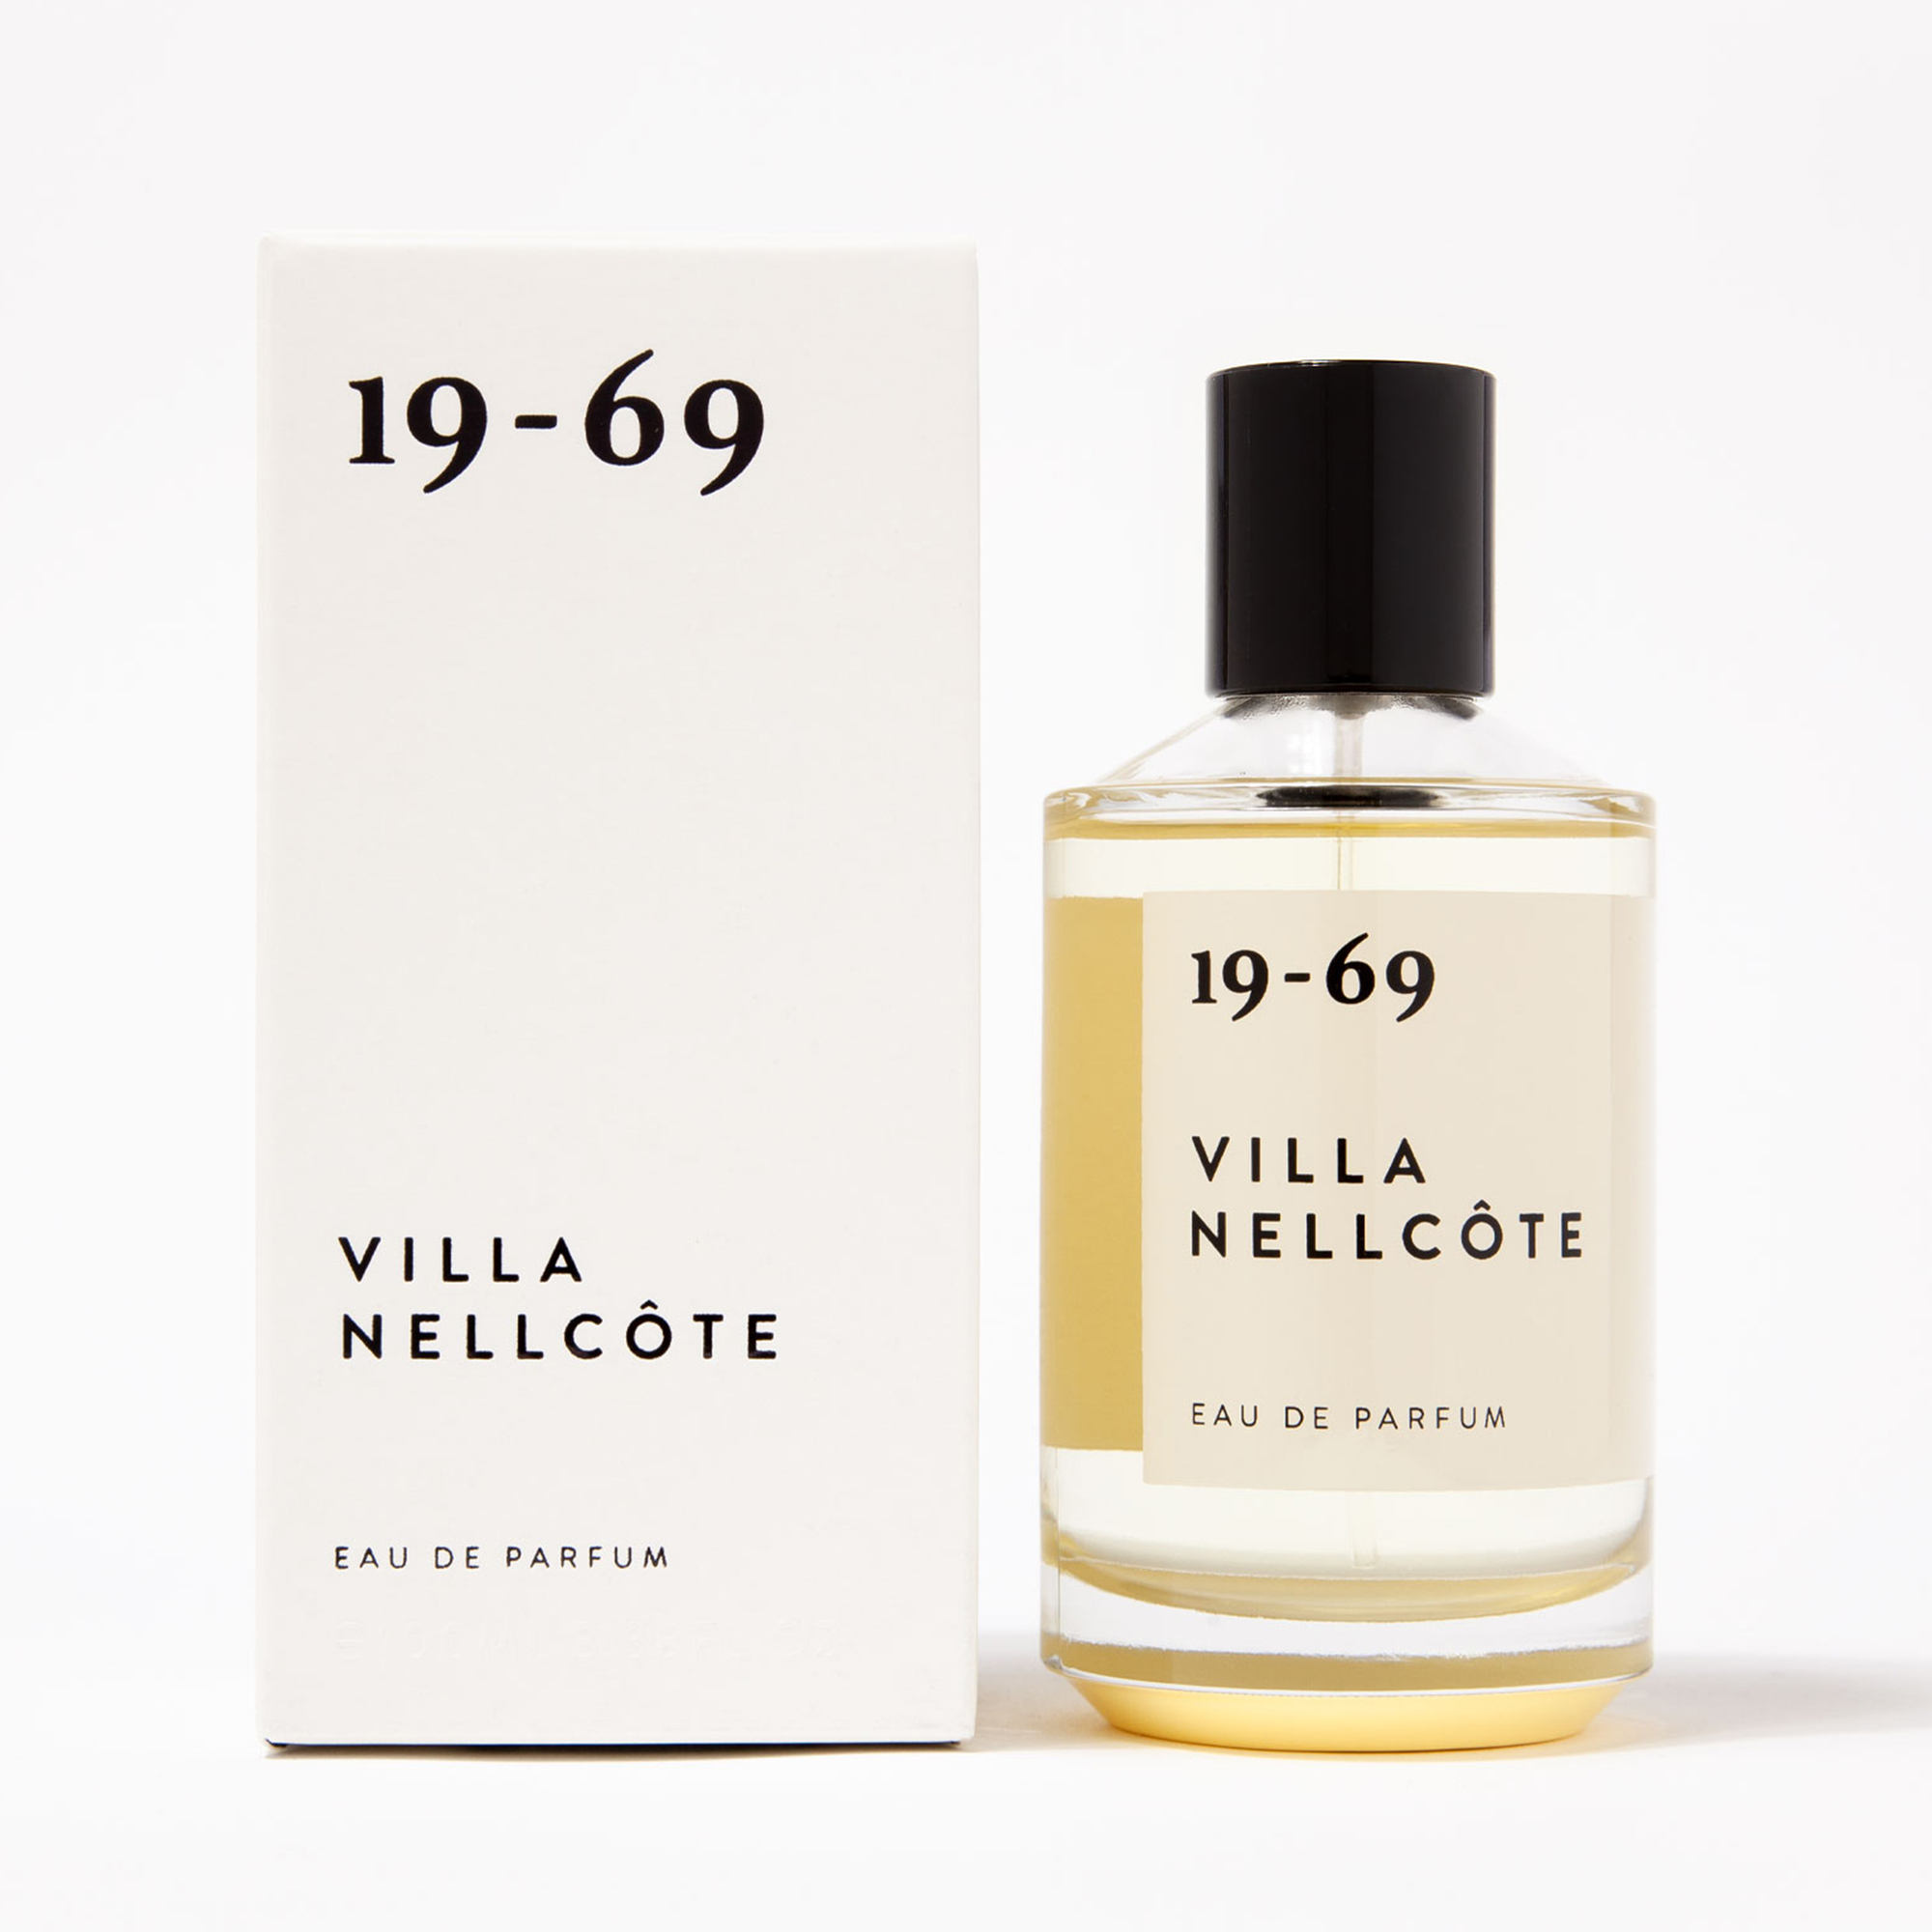 19-69 - Villa Nellcôte Eau de Parfum 50 ml